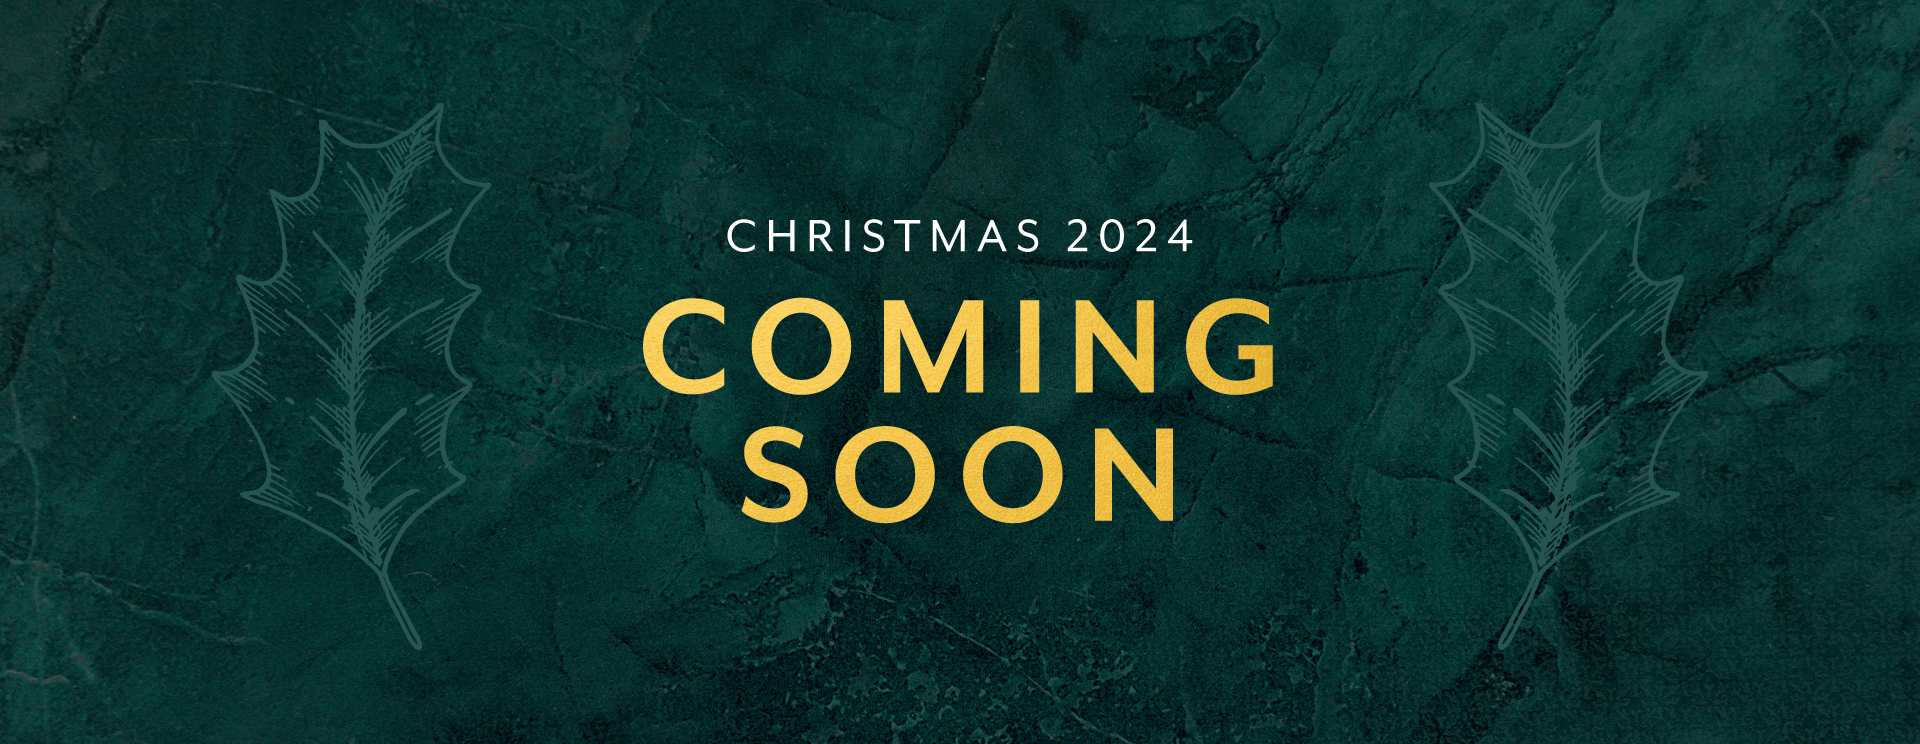 Christmas 2024 at Weybridge